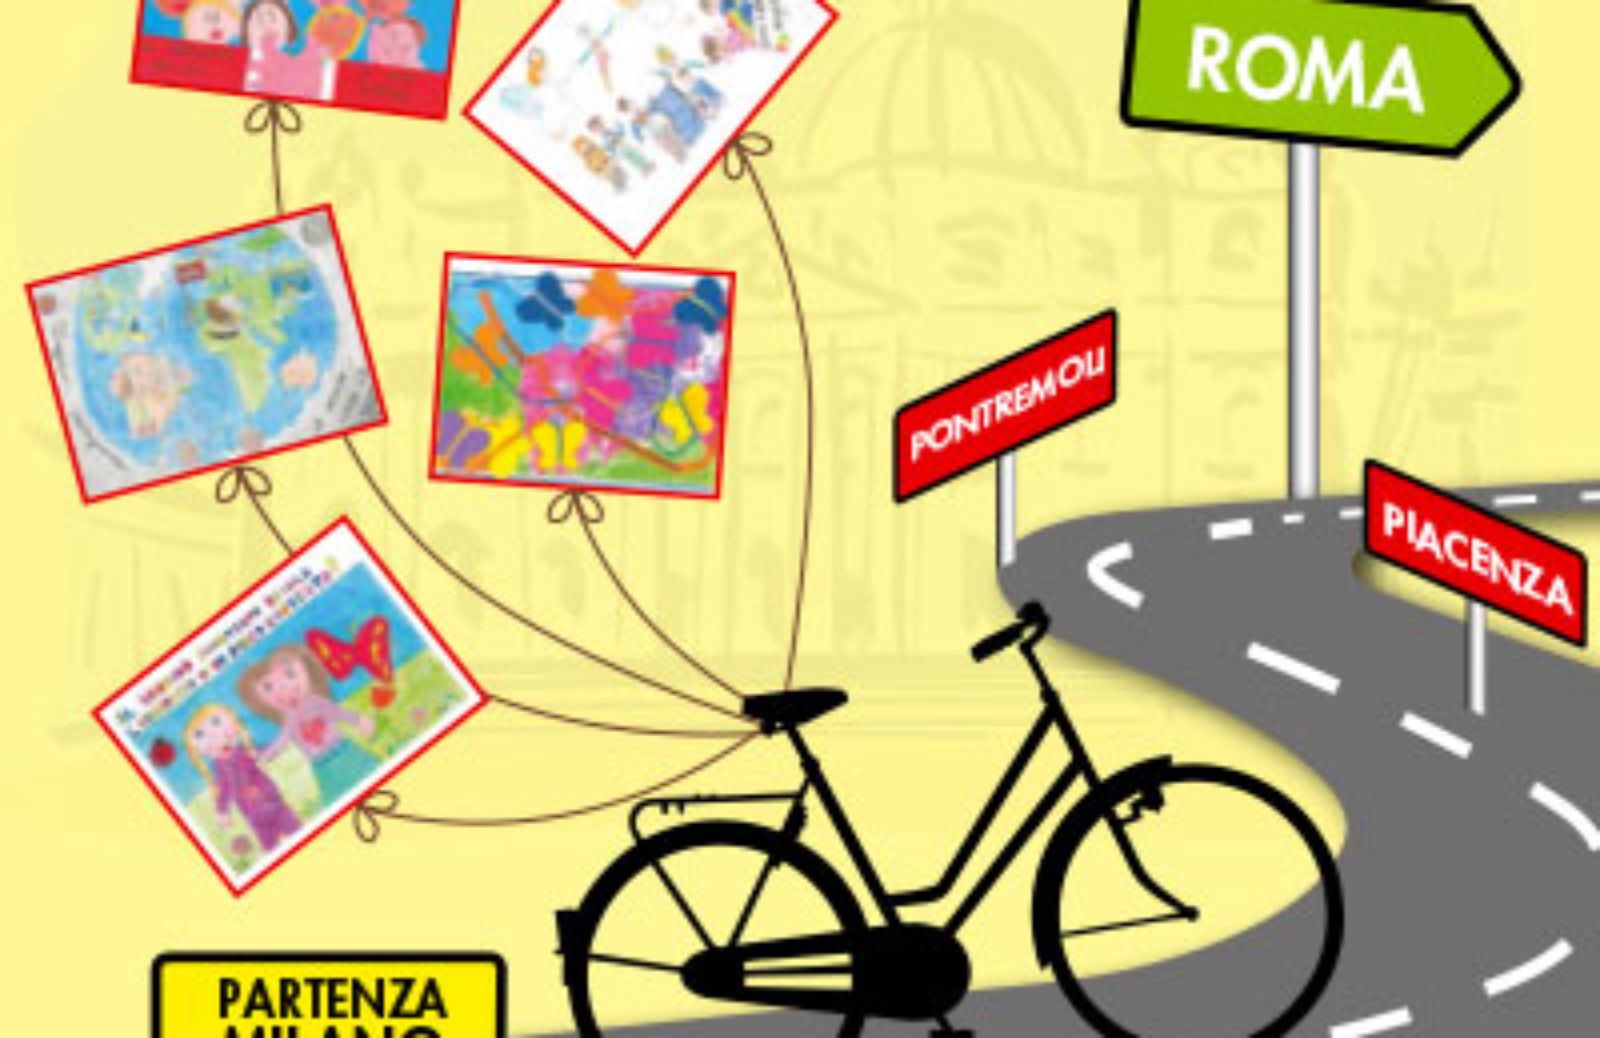 Cartoline in bicicletta: un aiuto ai bimbi malati e alle loro famiglie